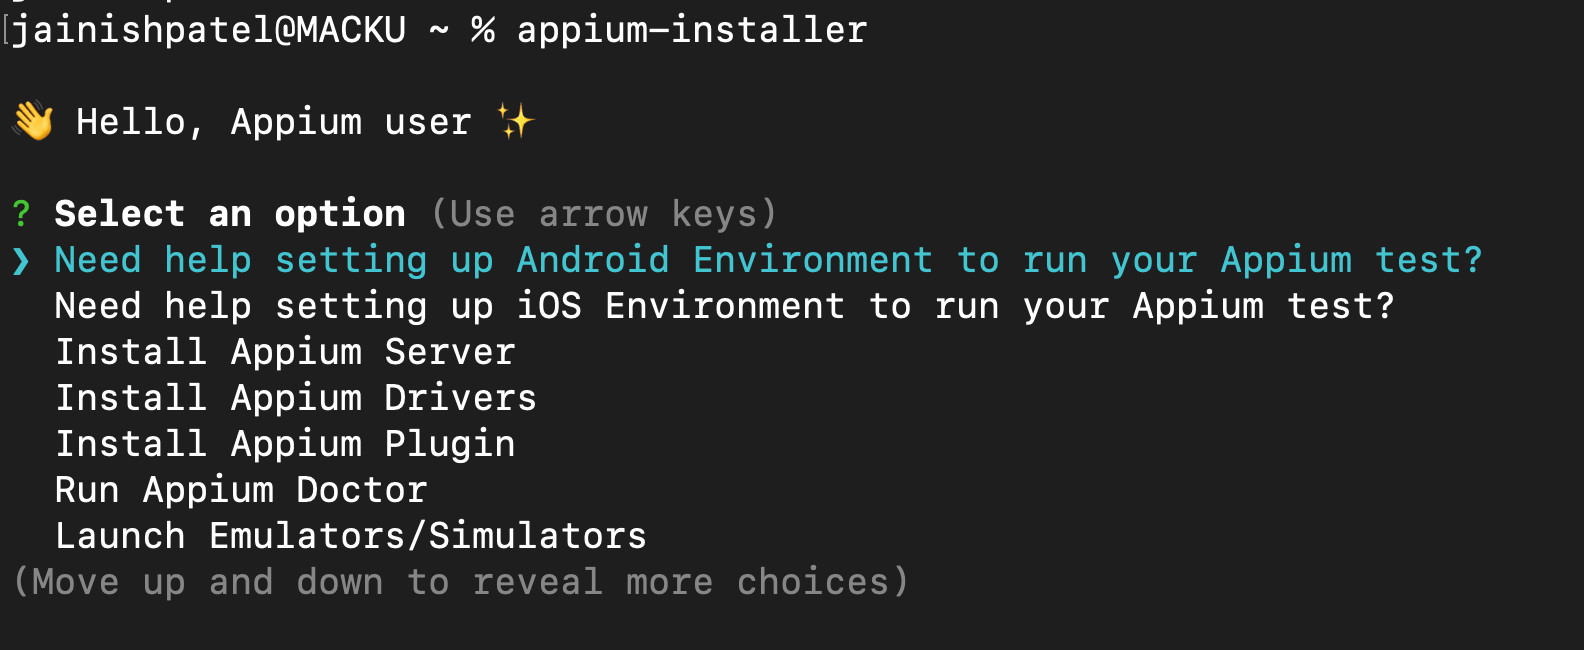 appium-installer